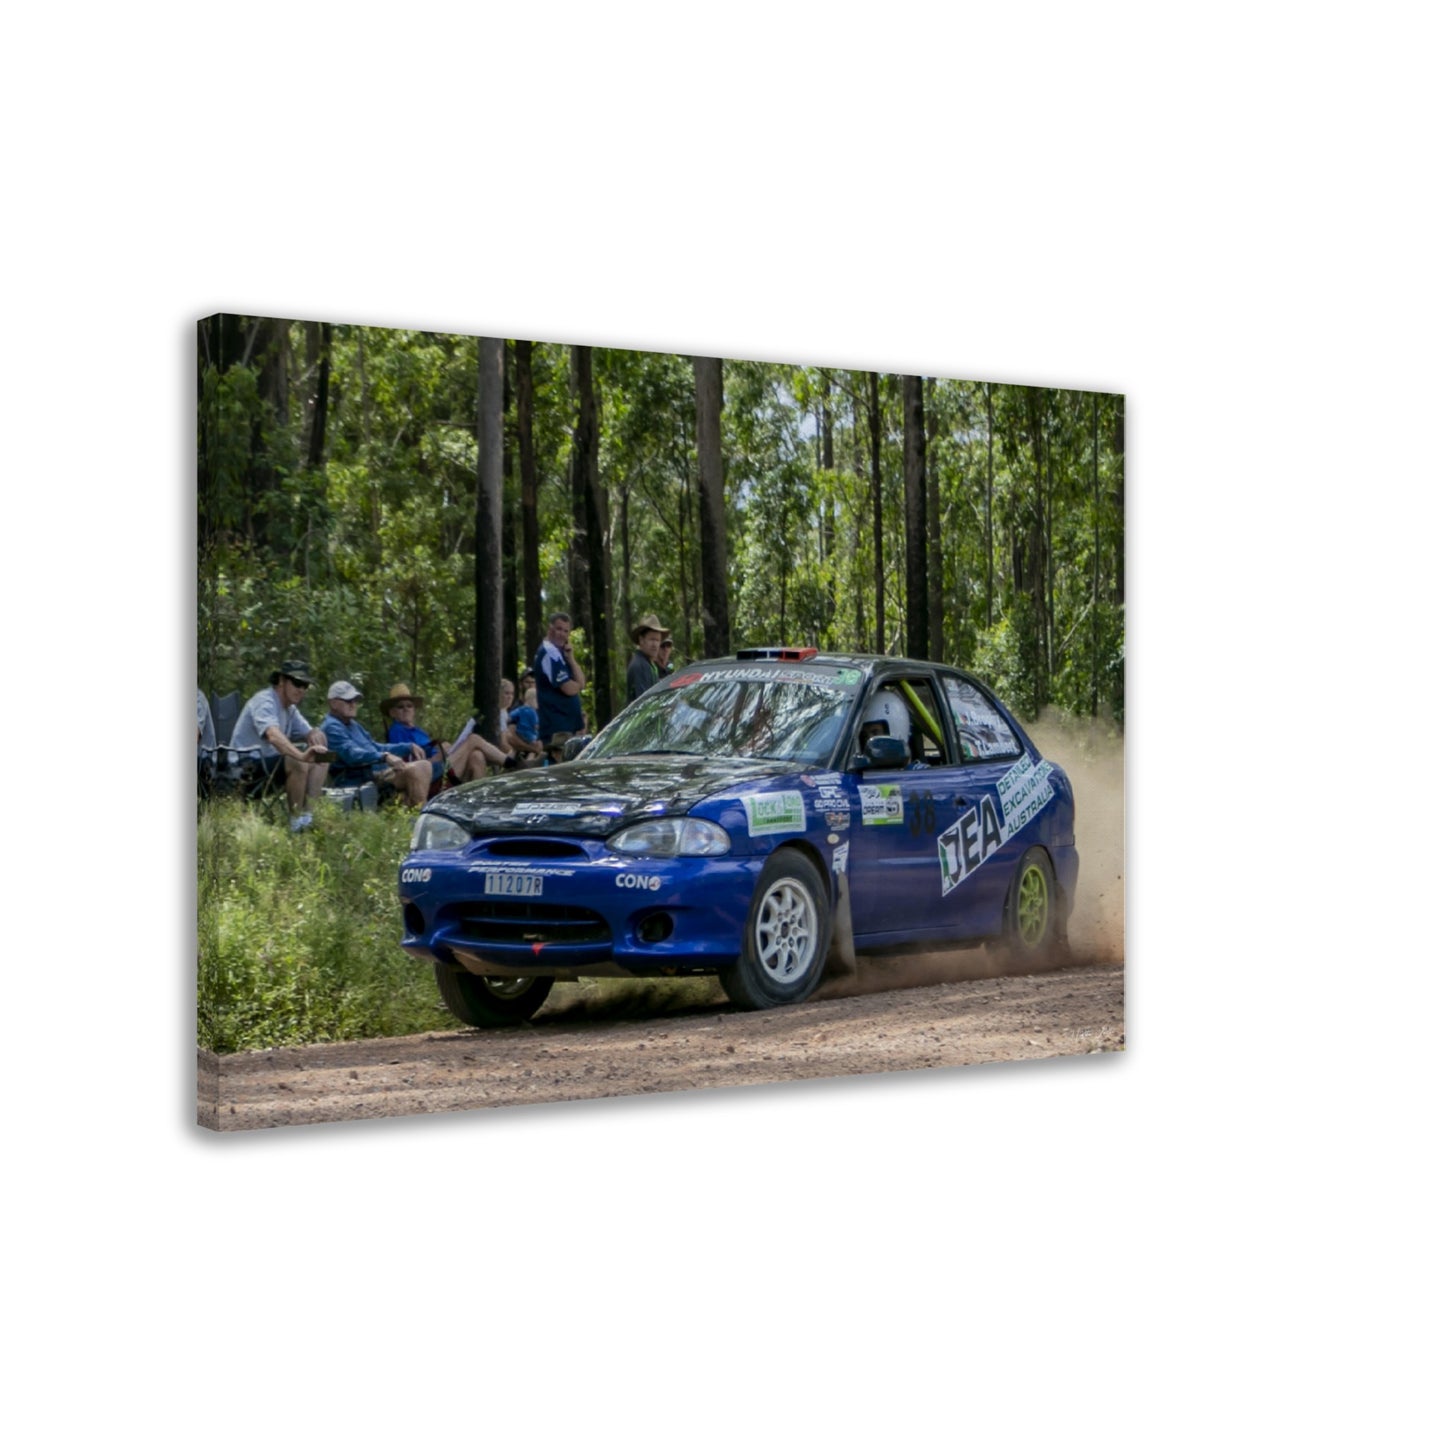 Amsag Taree Rally - Car 38- John Brophy / Tiernan Lambert